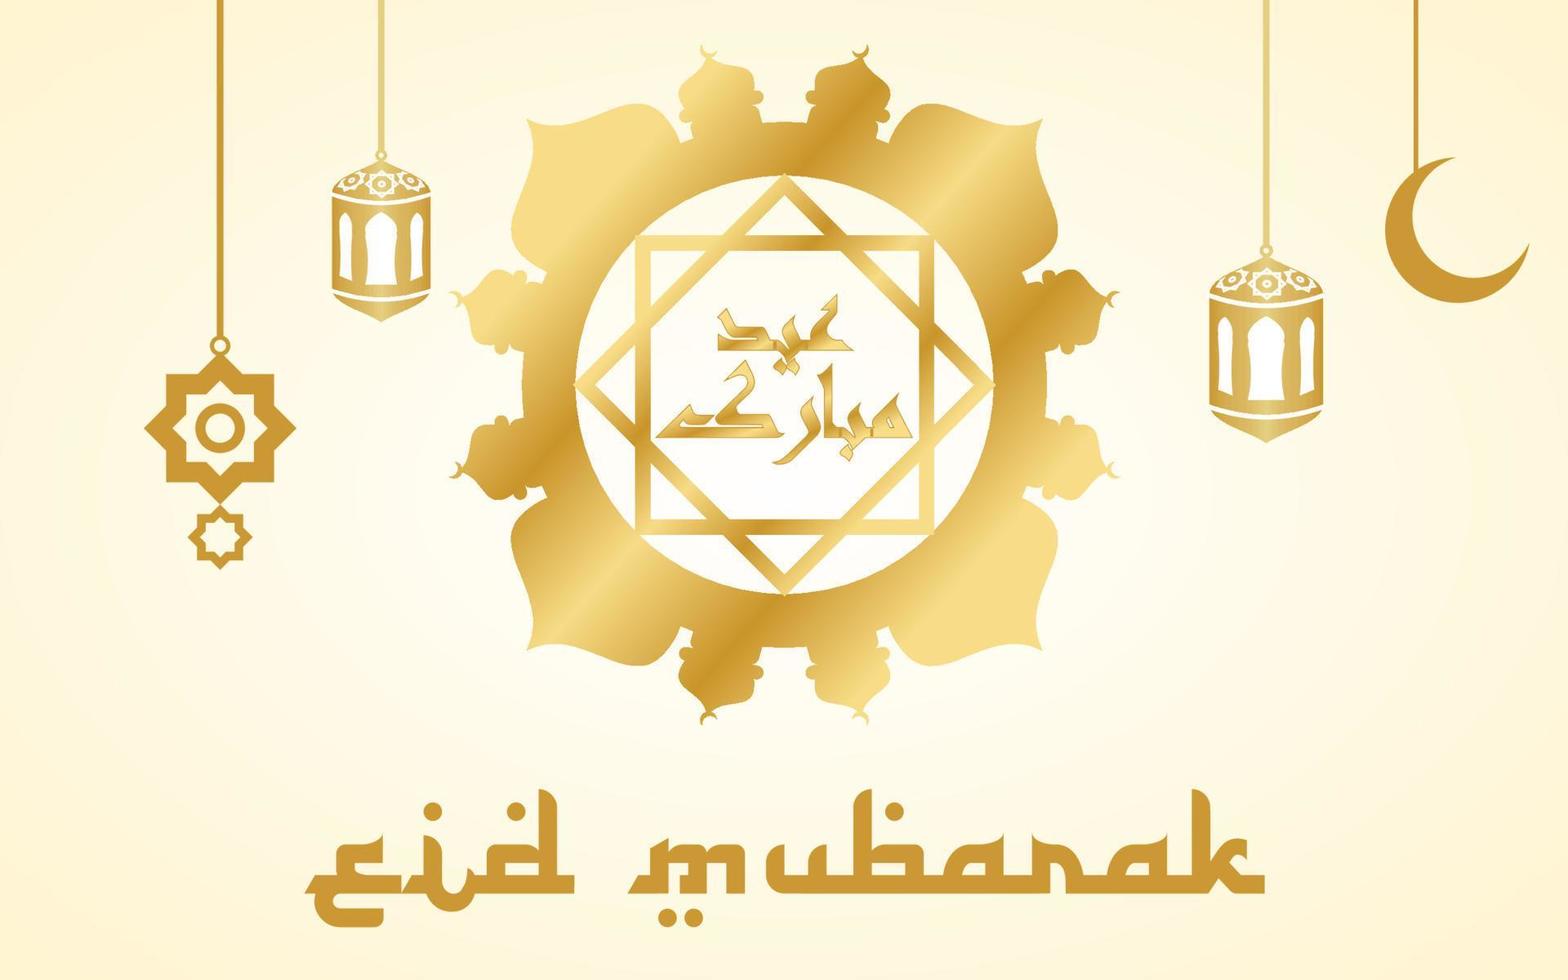 eid al-fitr è una festa musulmana, 1° shawwal. congratulazioni per aver eseguito il culto di eid al-fitr. vettore